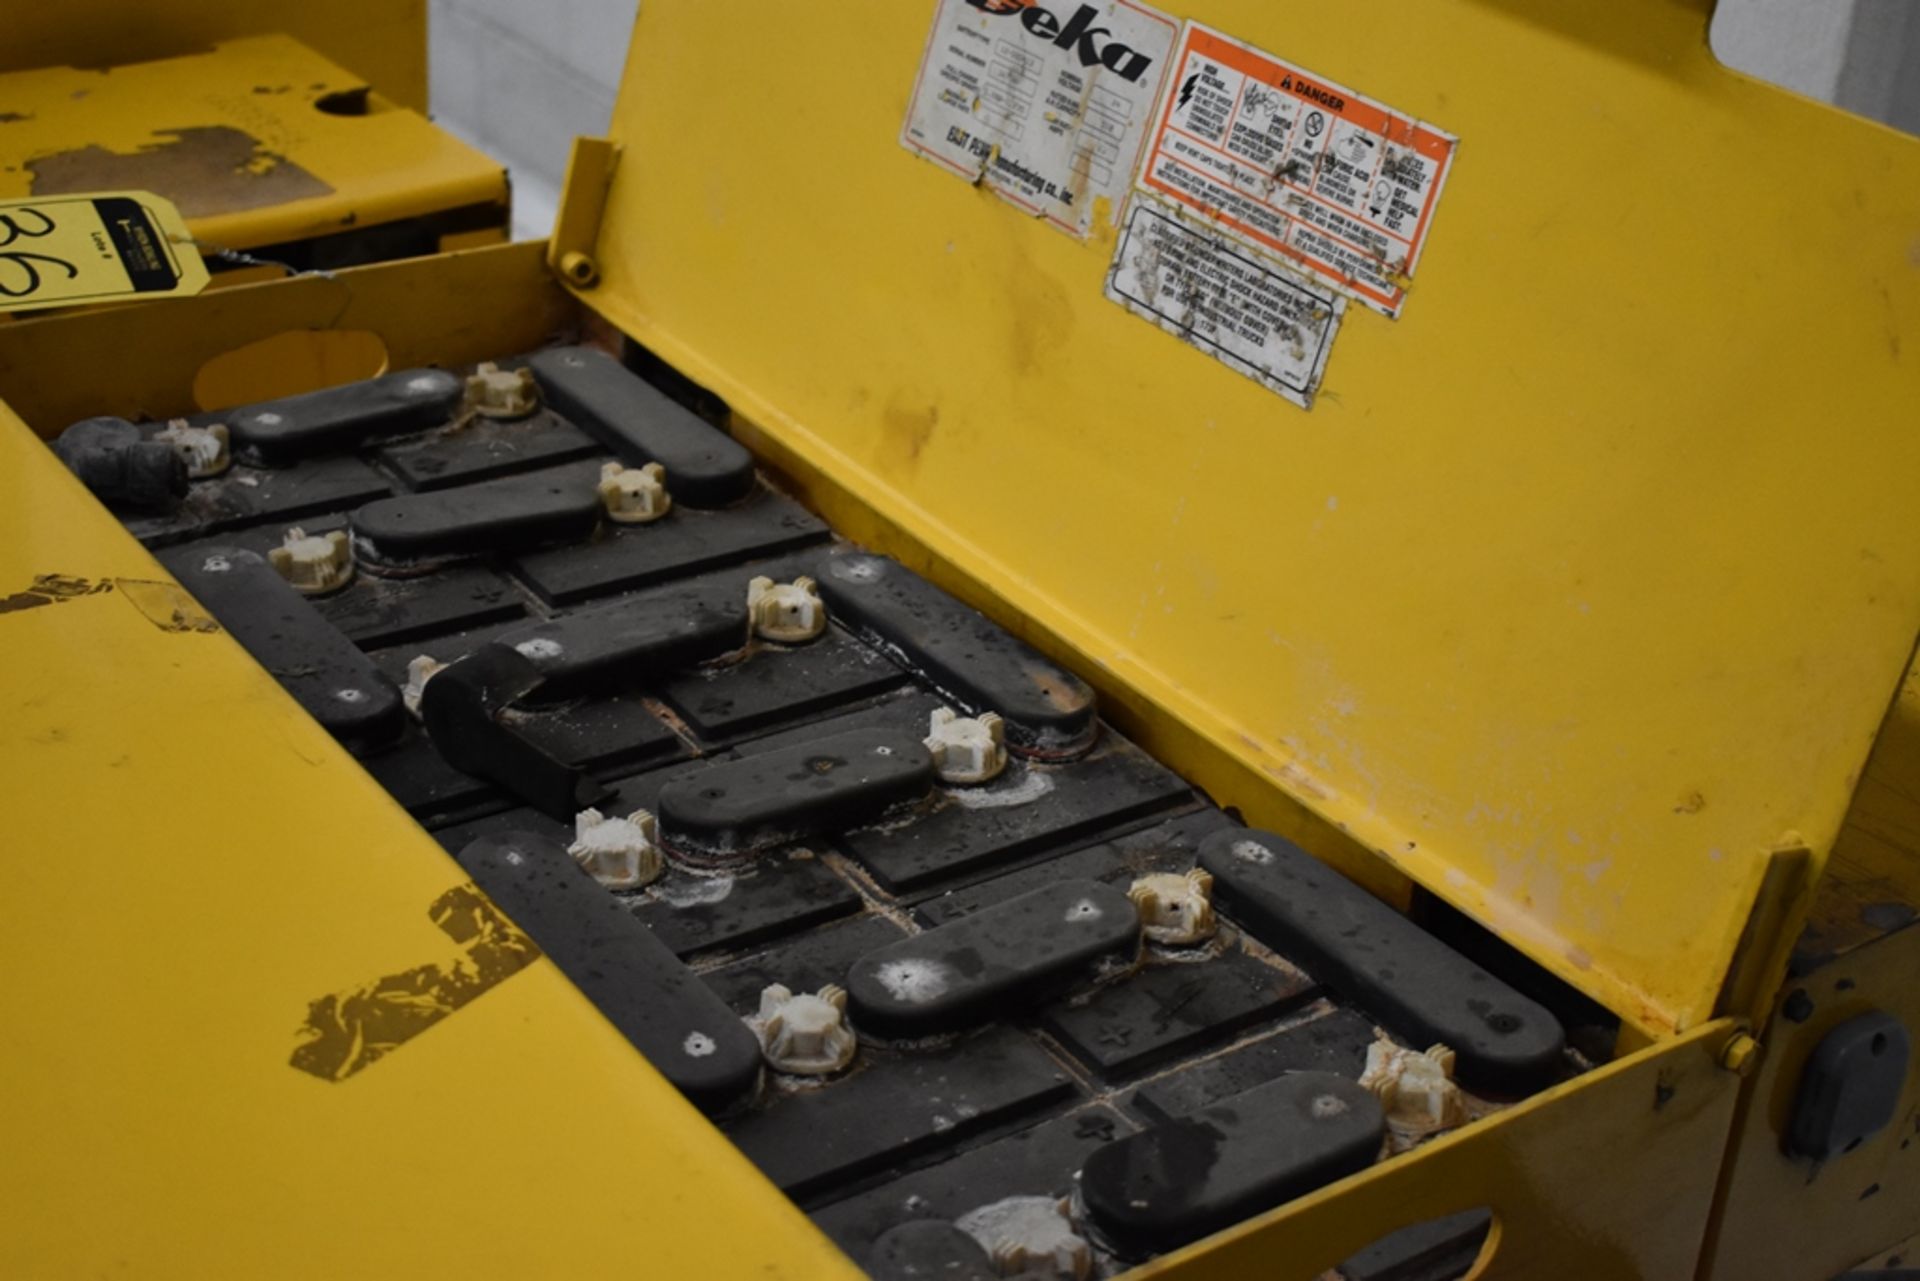 Ametek Prestolite Power Forklift Battery Charger, Model Mate-80 and Battery Brand Deka for 24 volts - Image 14 of 16